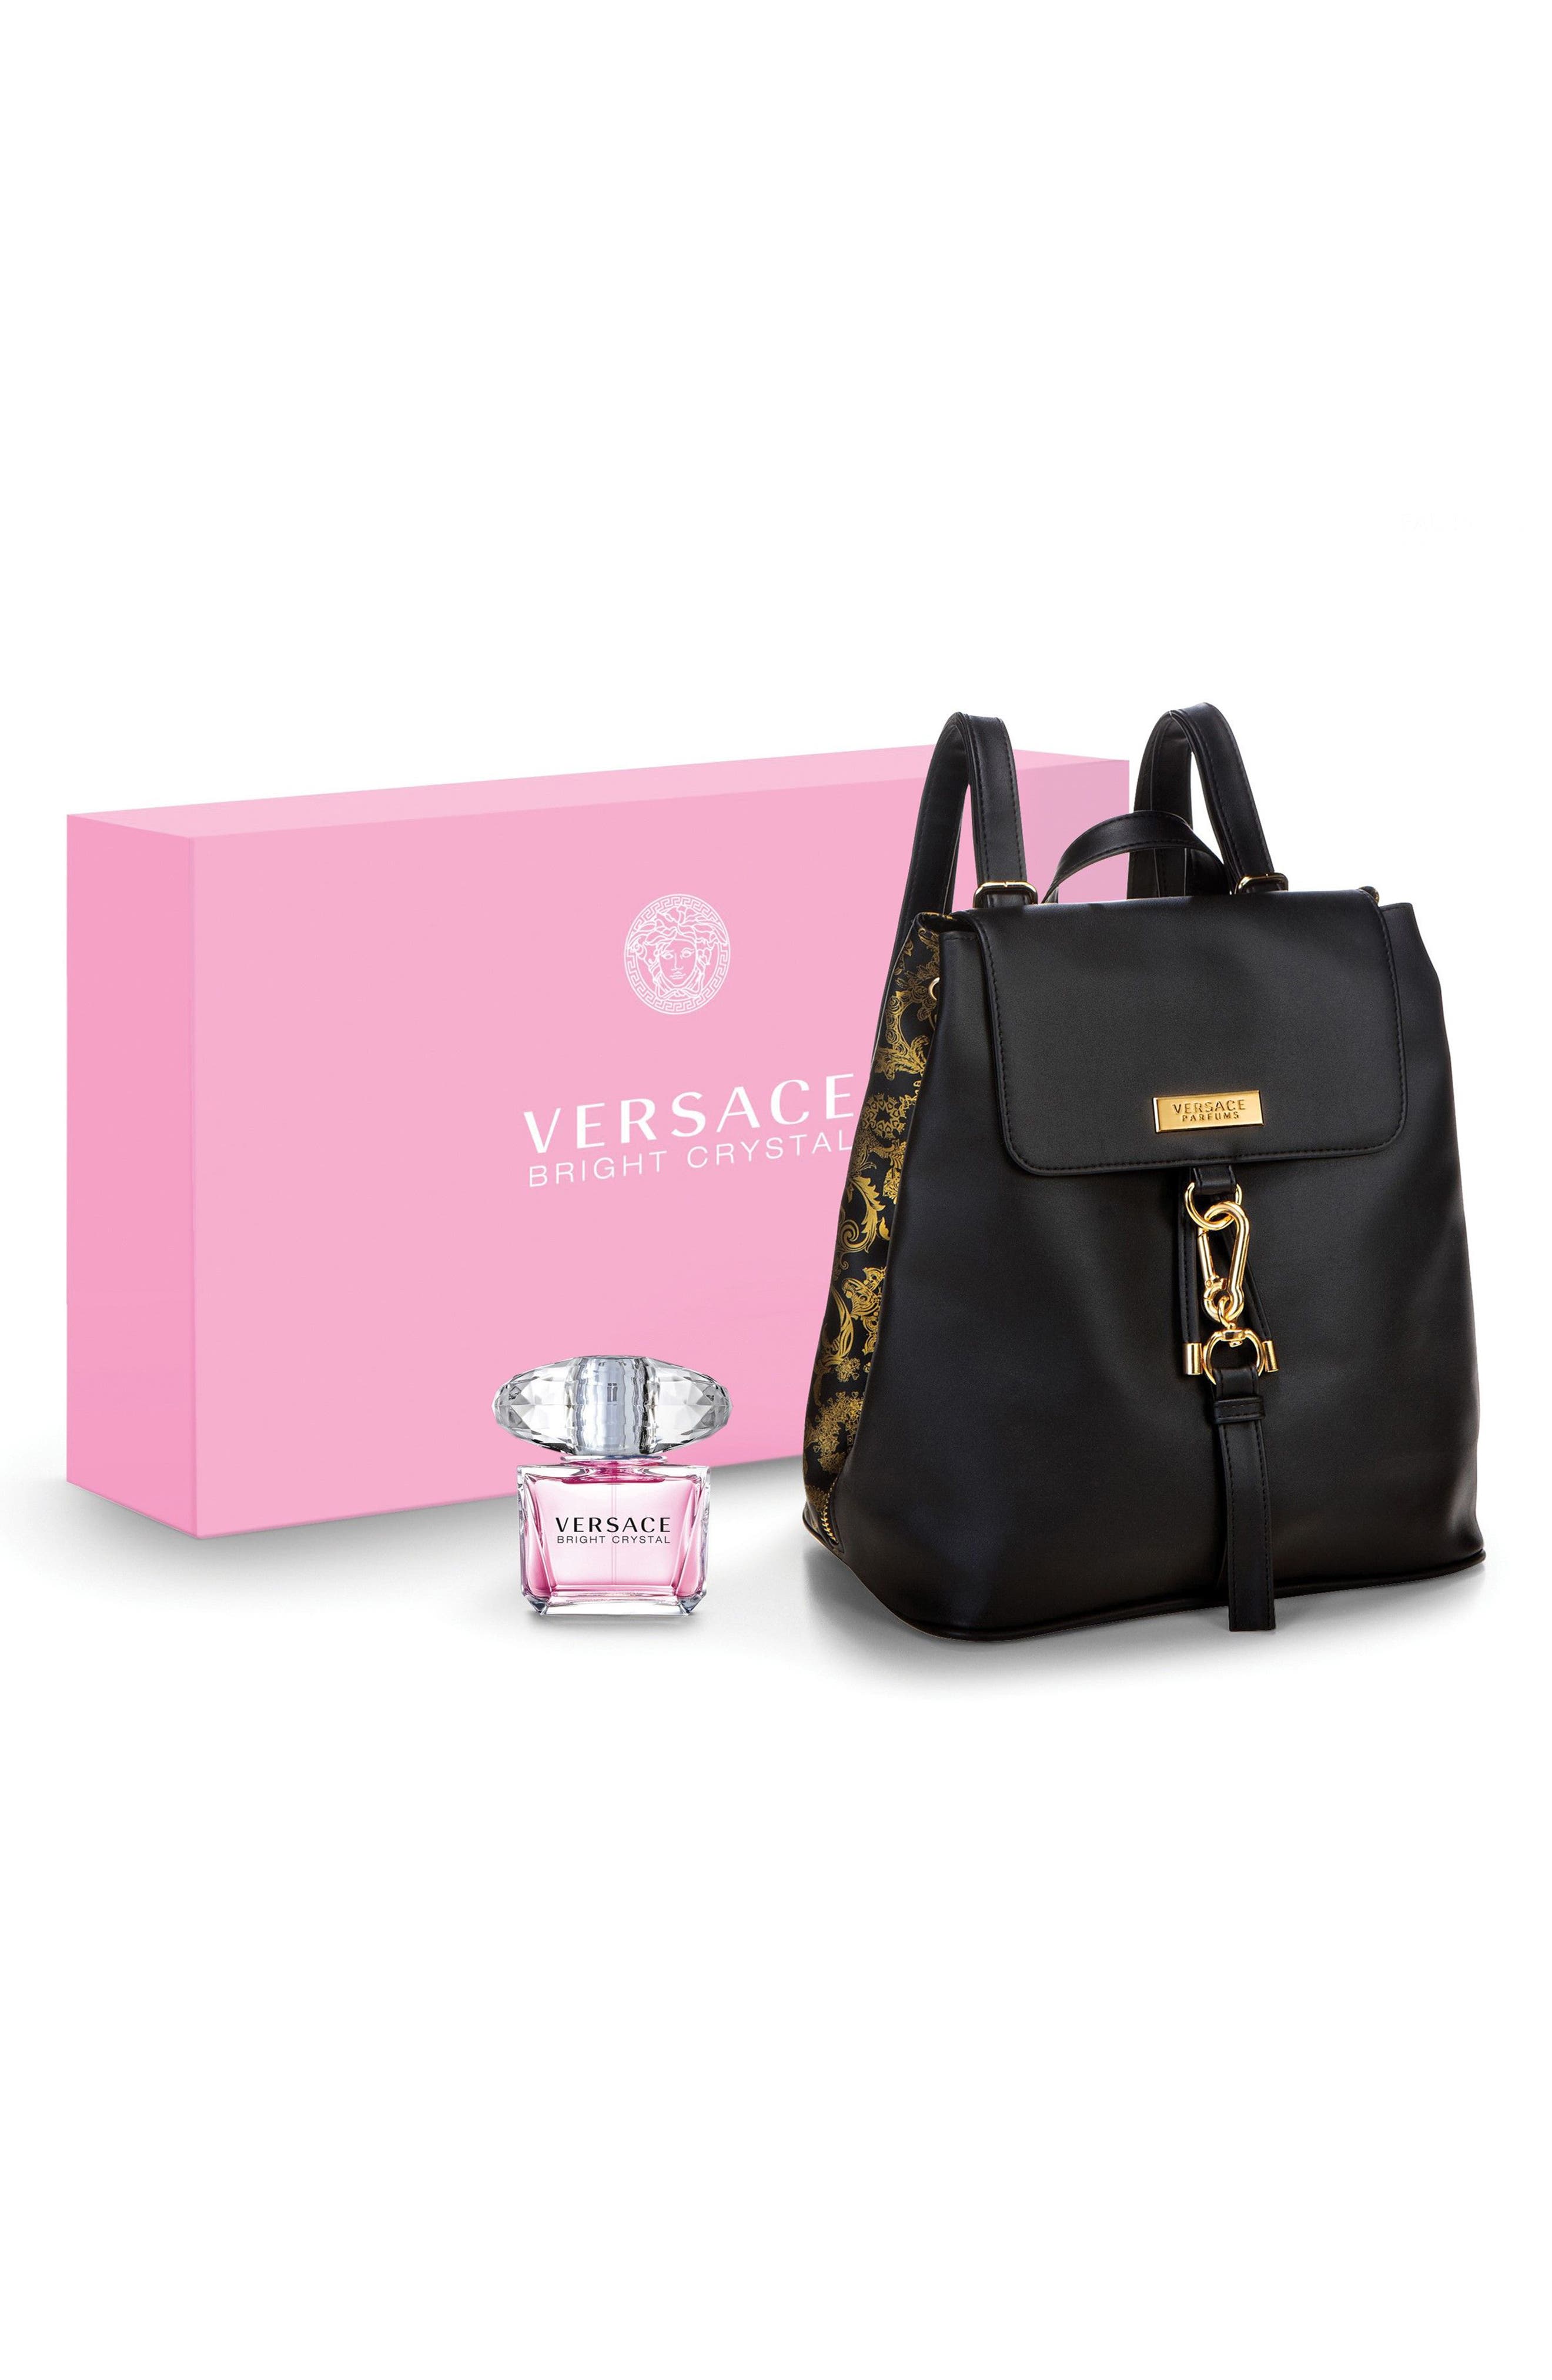 Versace Bright Crystal \u0026 Backpack Set 